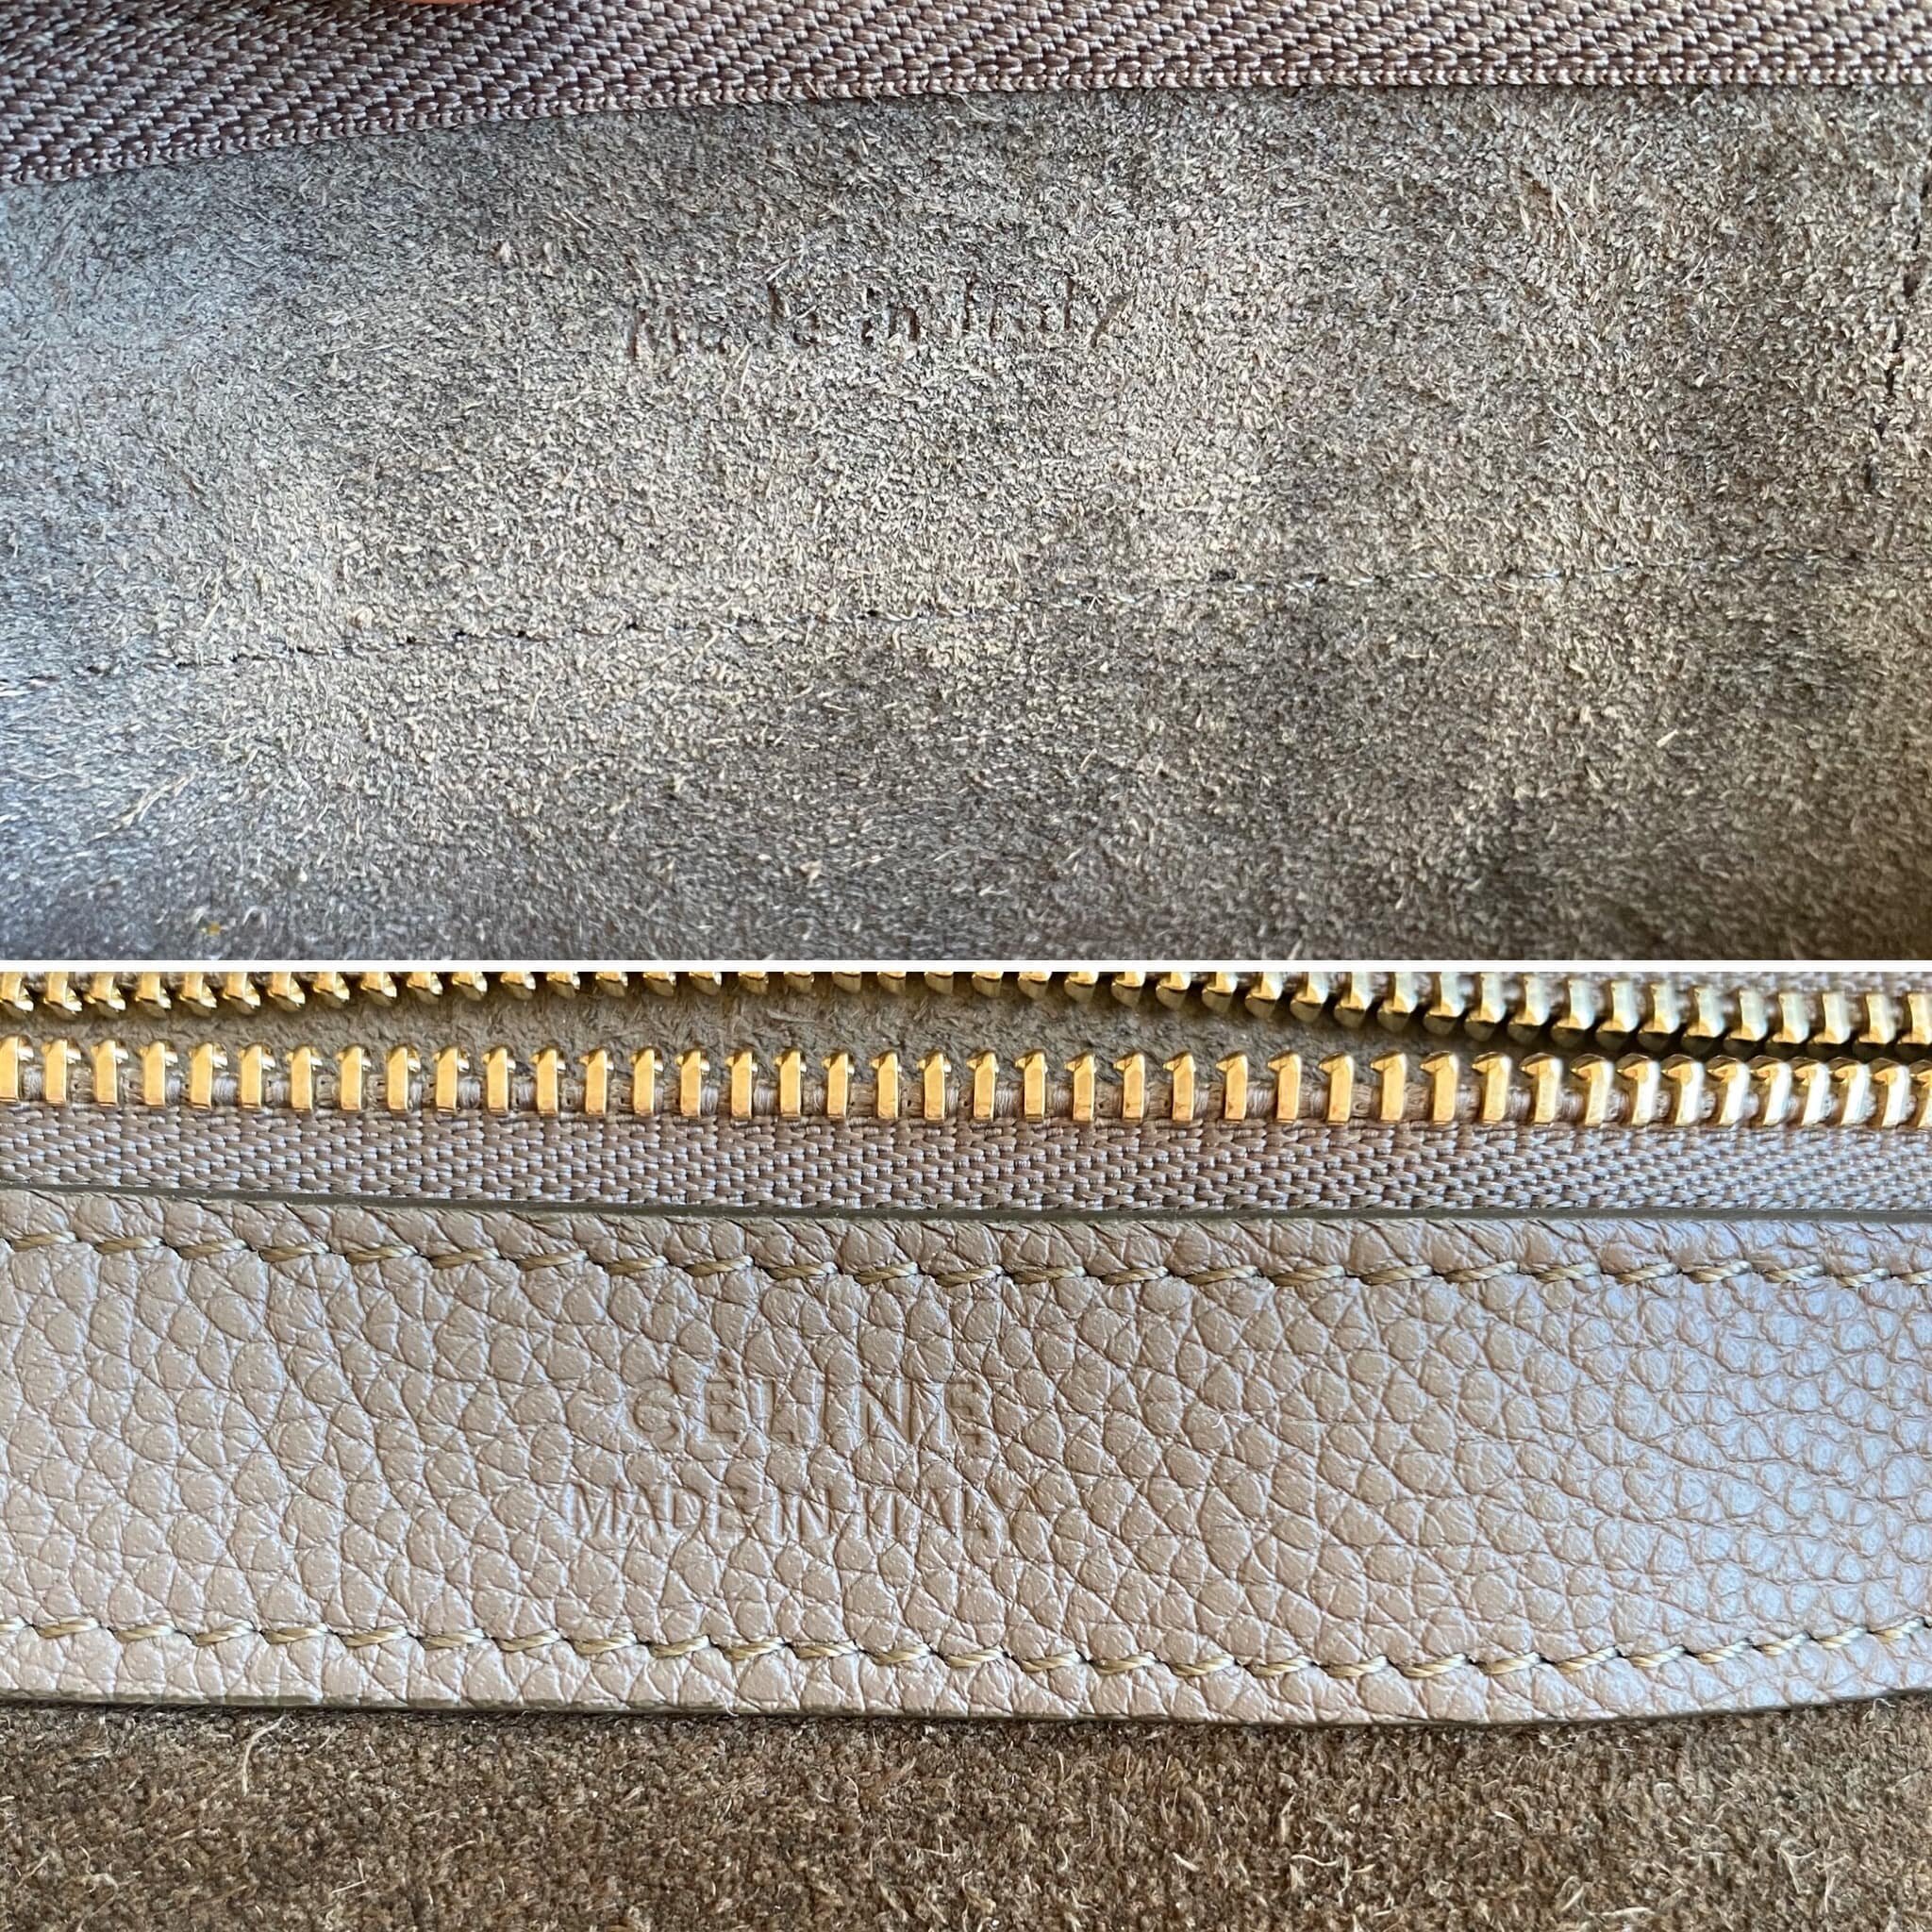 How To Spot Real Vs Fake Celine Belt Bag – LegitGrails